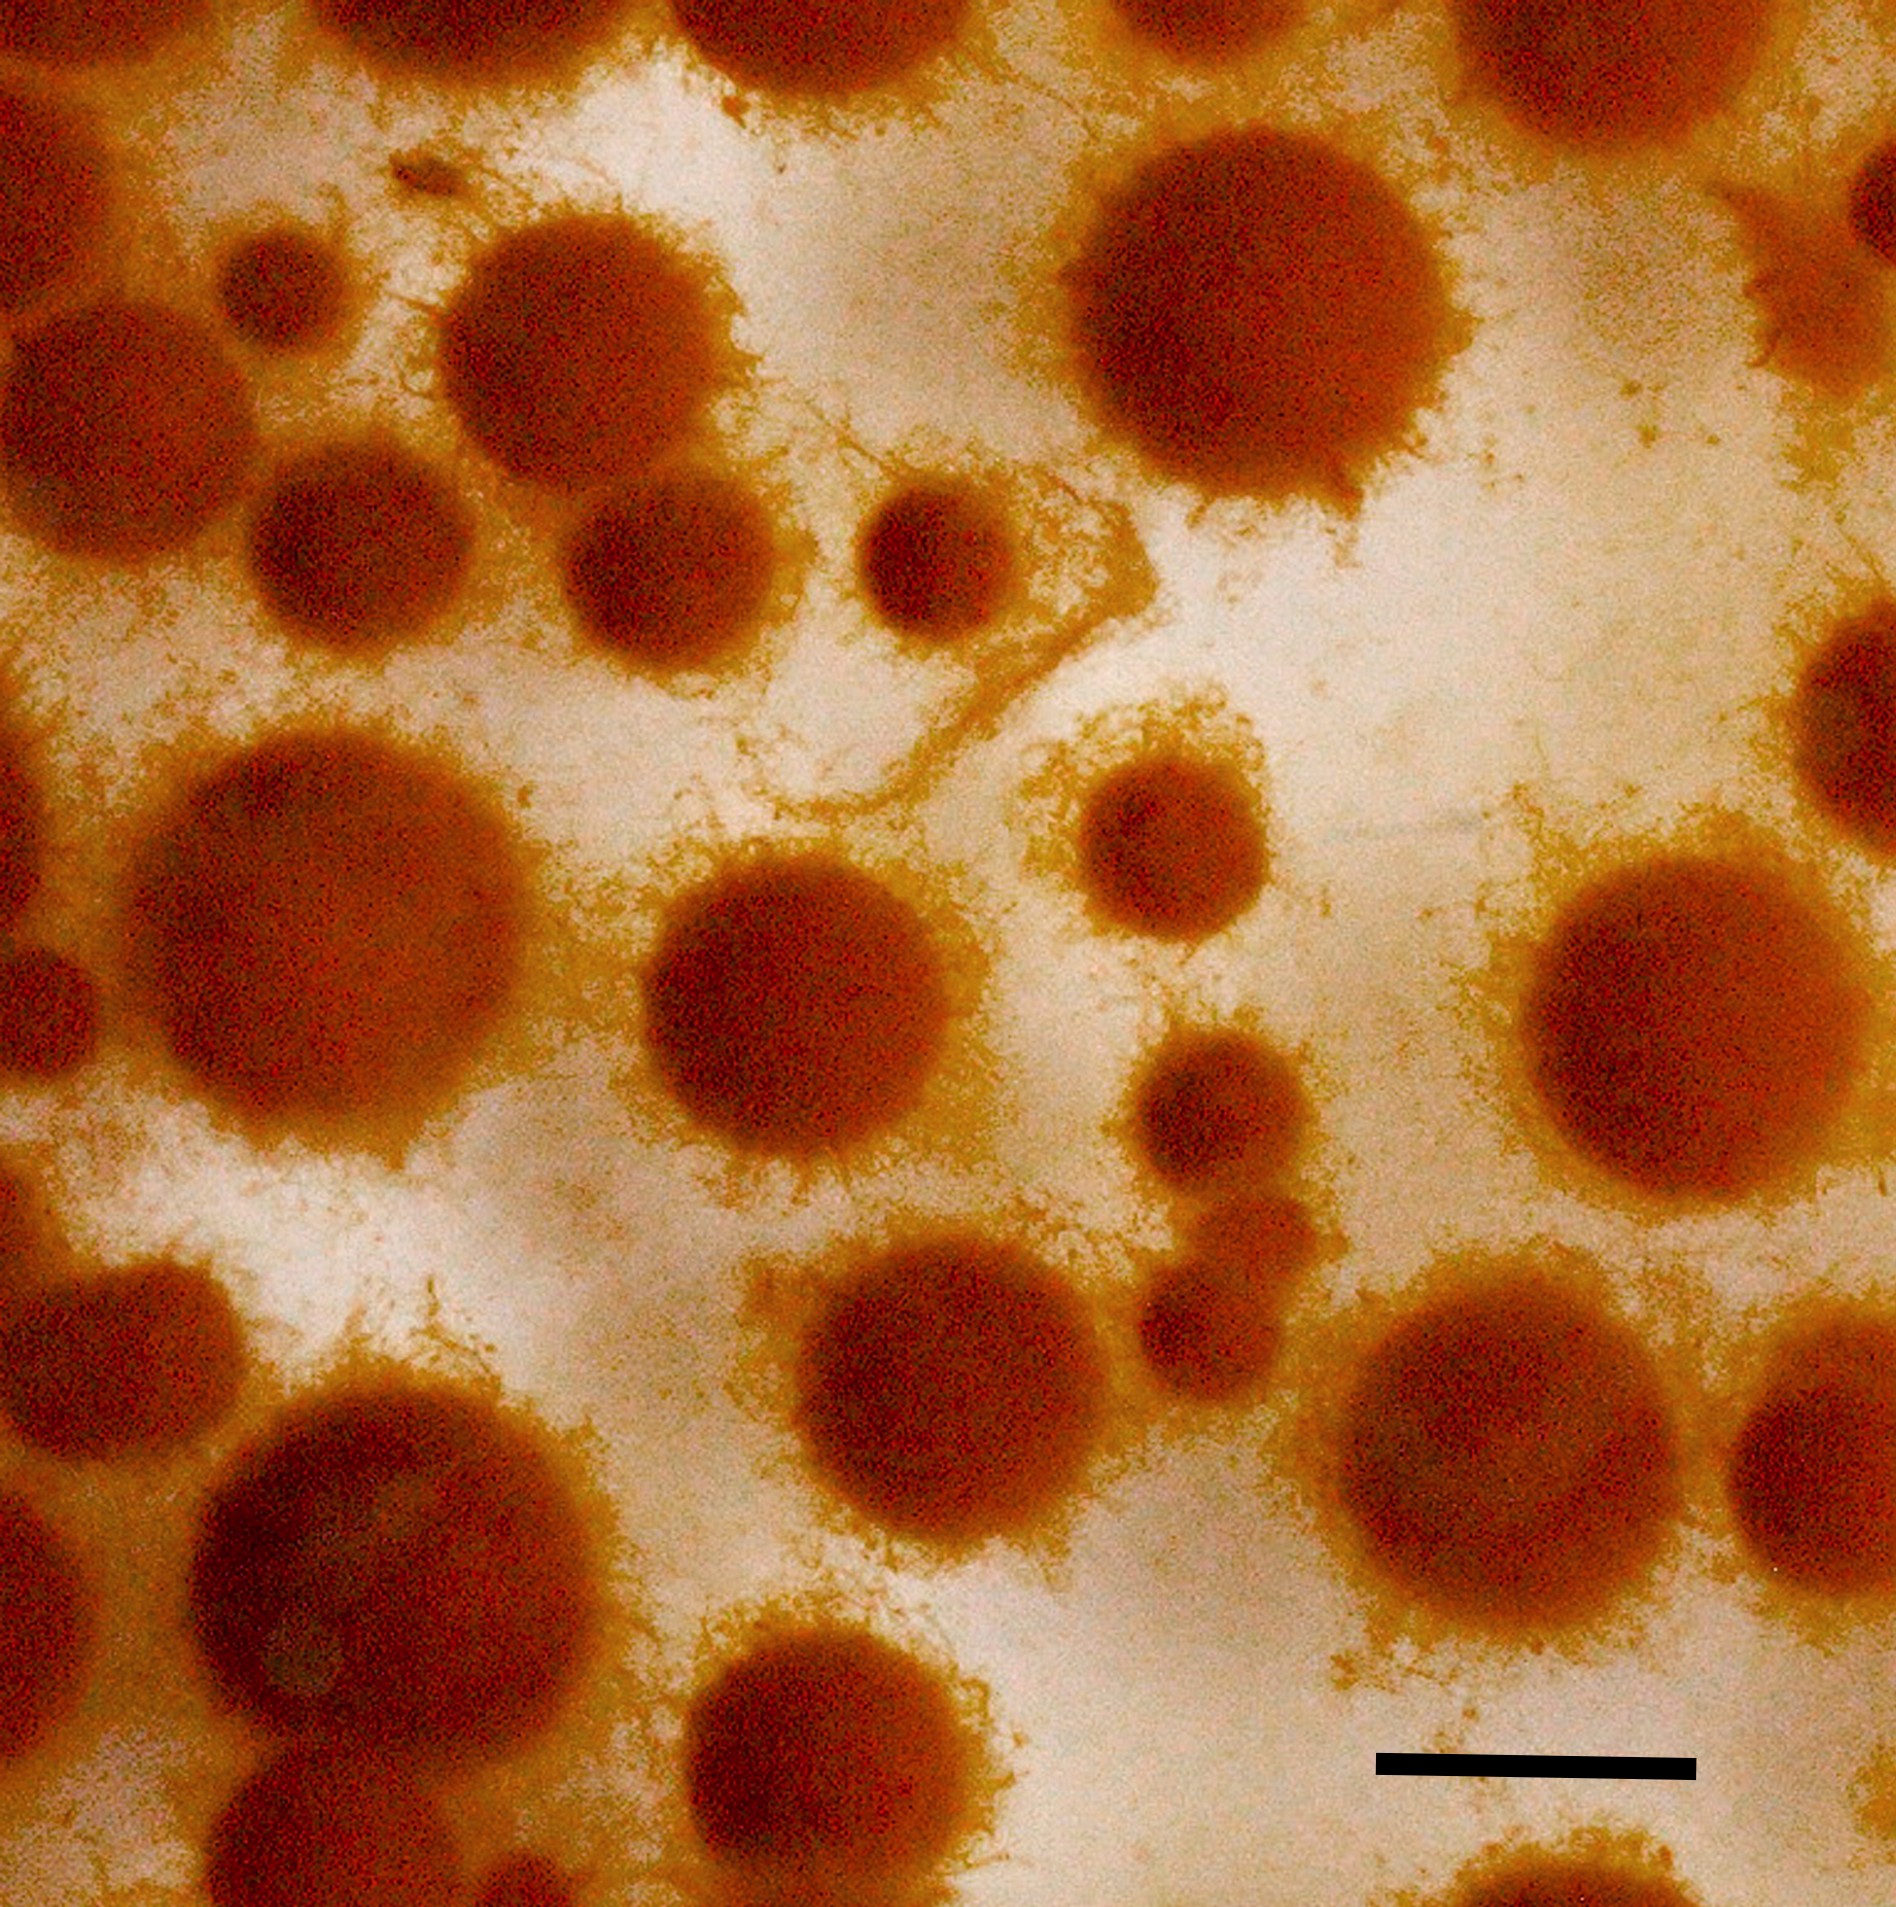 Внешний вид пеллет мицелия I. obliquus на 15-е сутки культивирования гриба в погруженных условиях